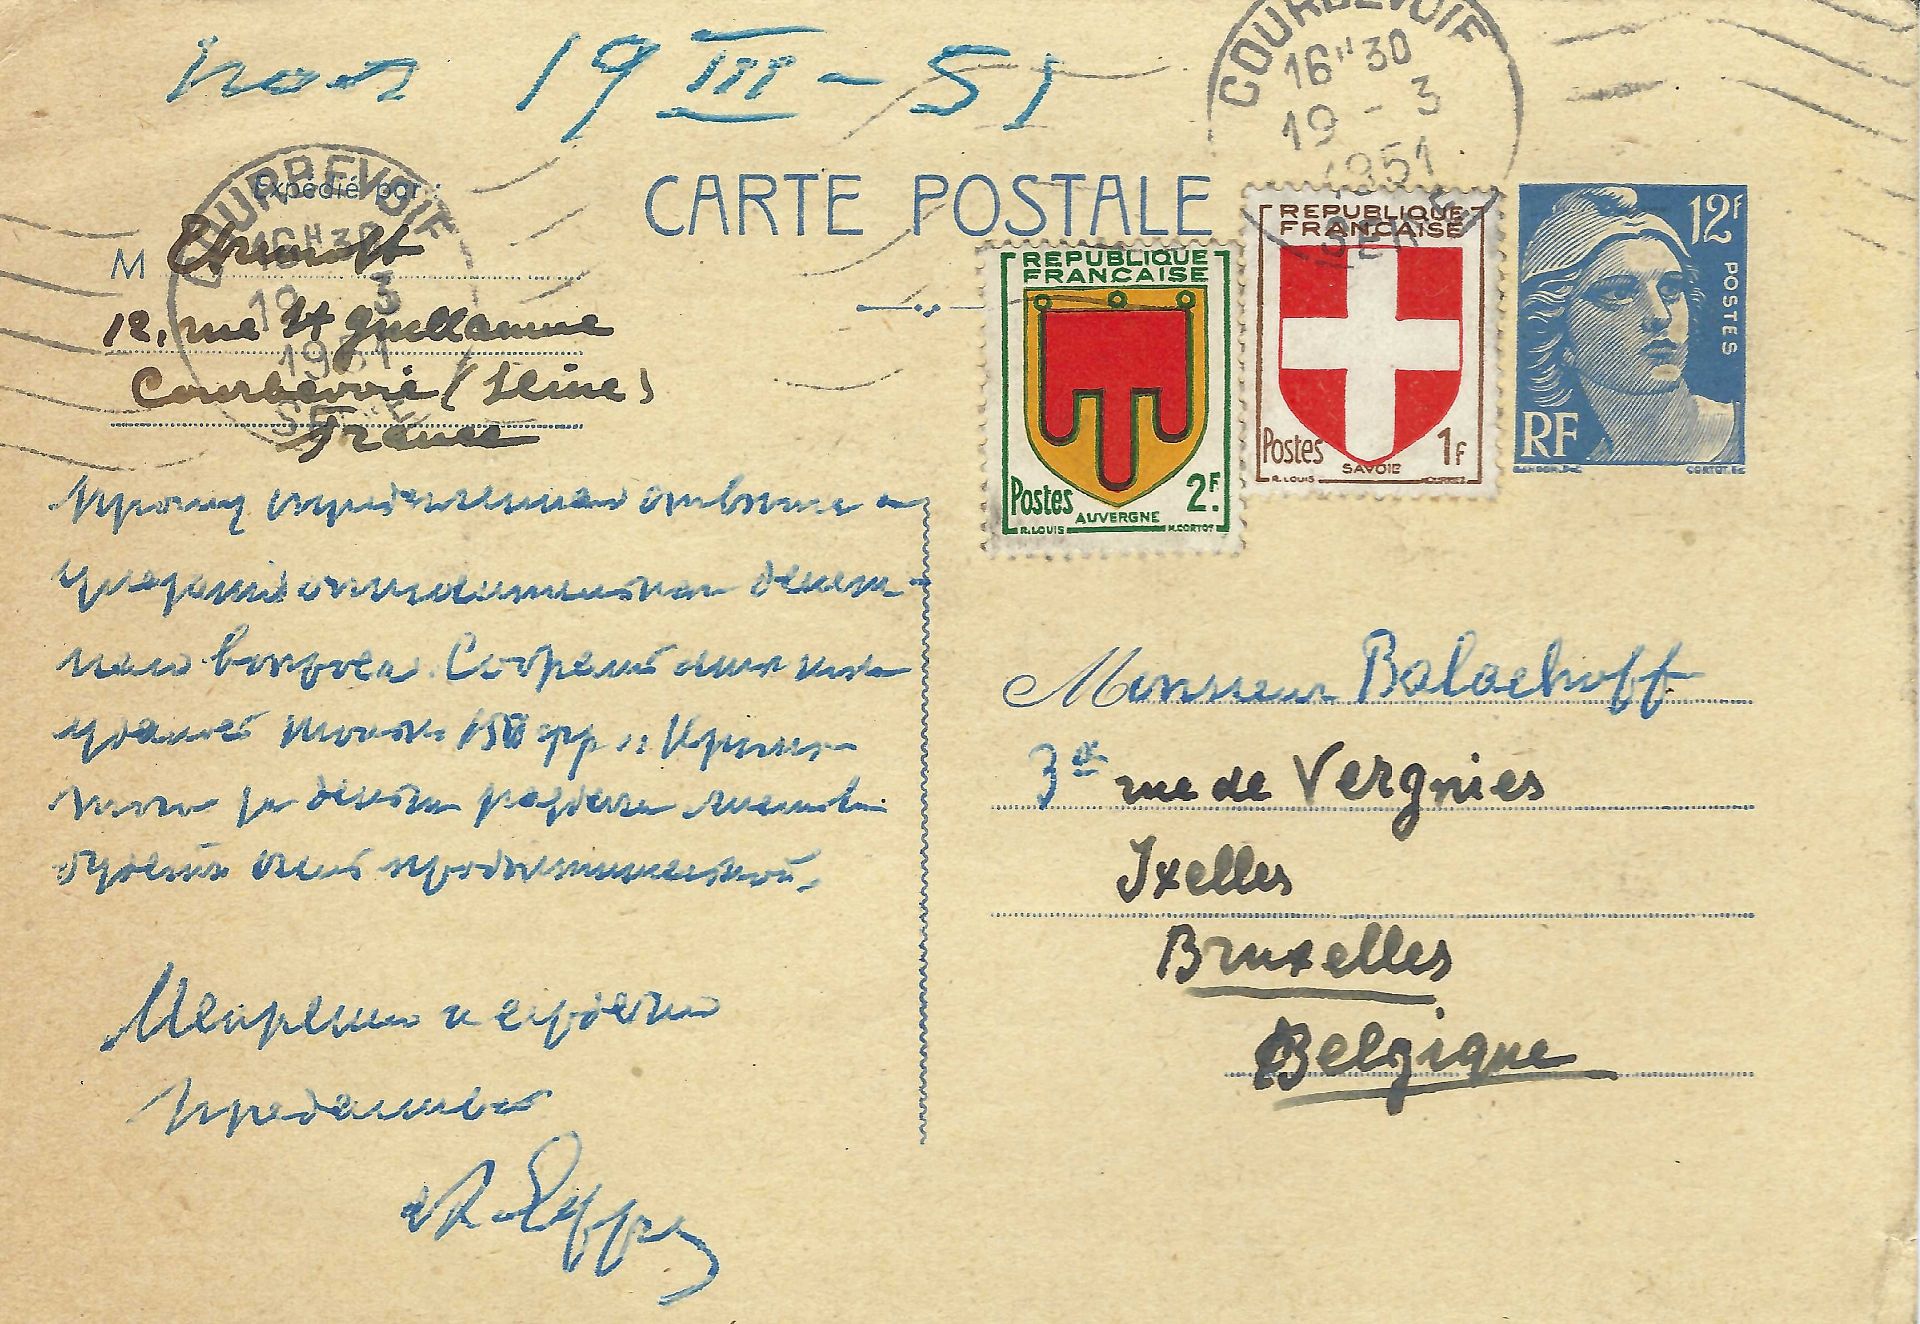 ARCHIVES d’Andreï BALASHOV (1889-1969) • Correspondances avec A.Efremov (1878-1964) en France, V. - Image 10 of 39